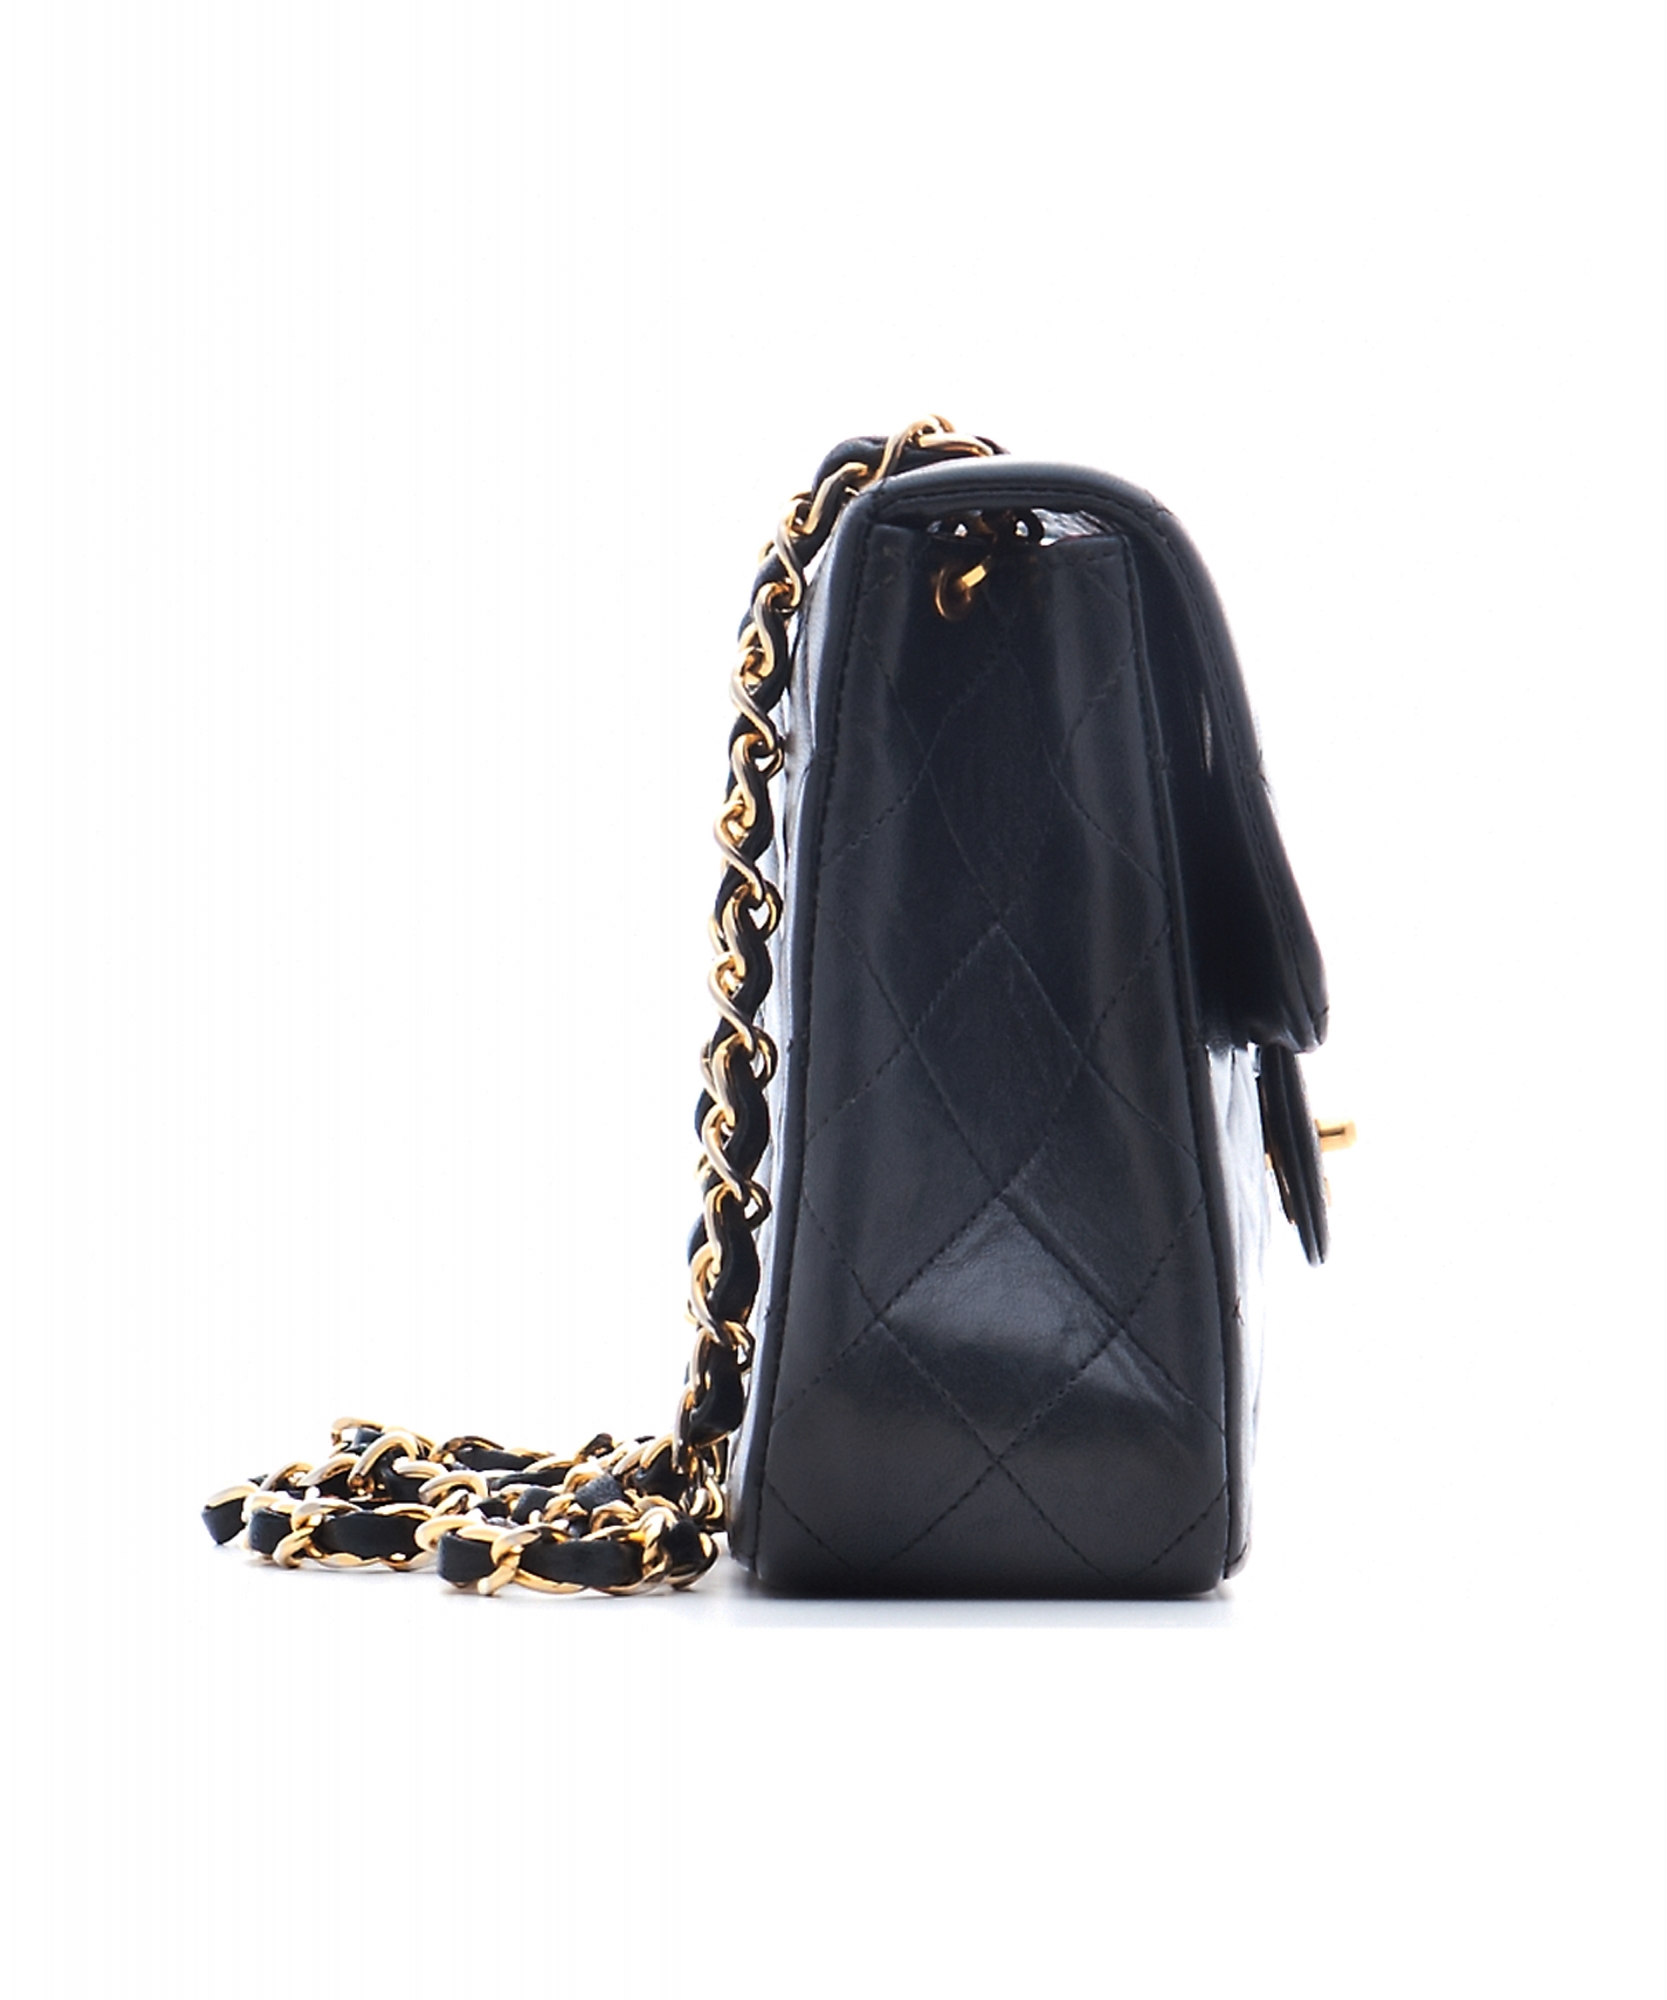 Chanel Black Leather Quilted Shoulder Bag - Chanel | ArtListings